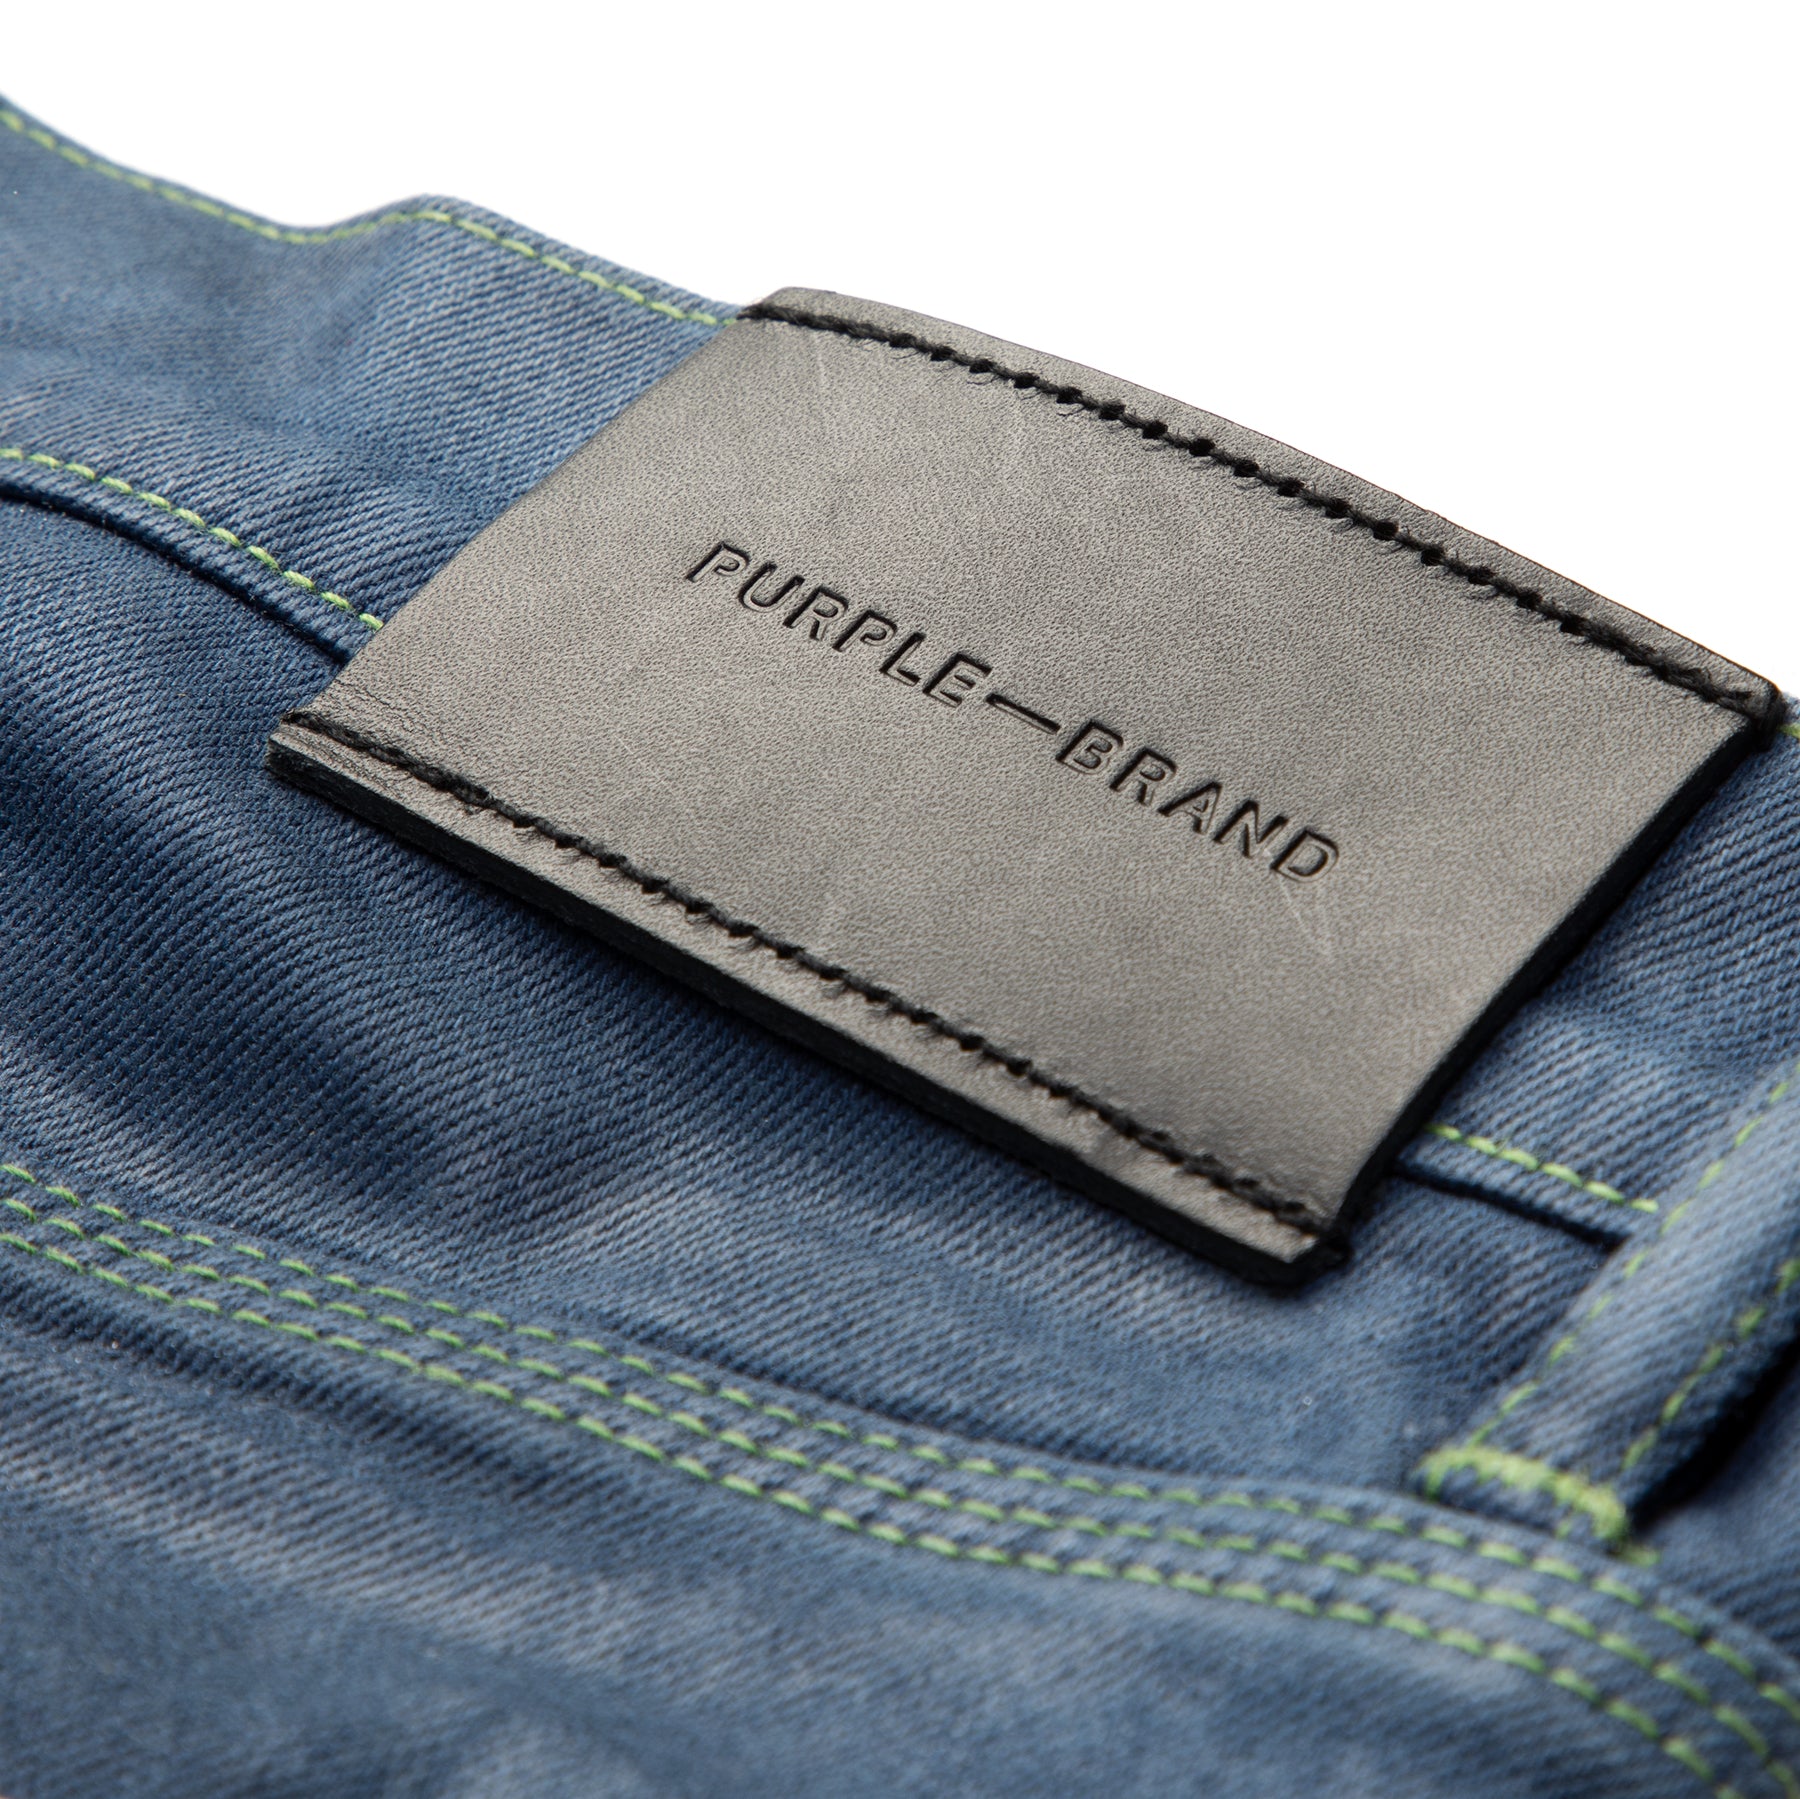 Men's PURPLE BRAND Jeans